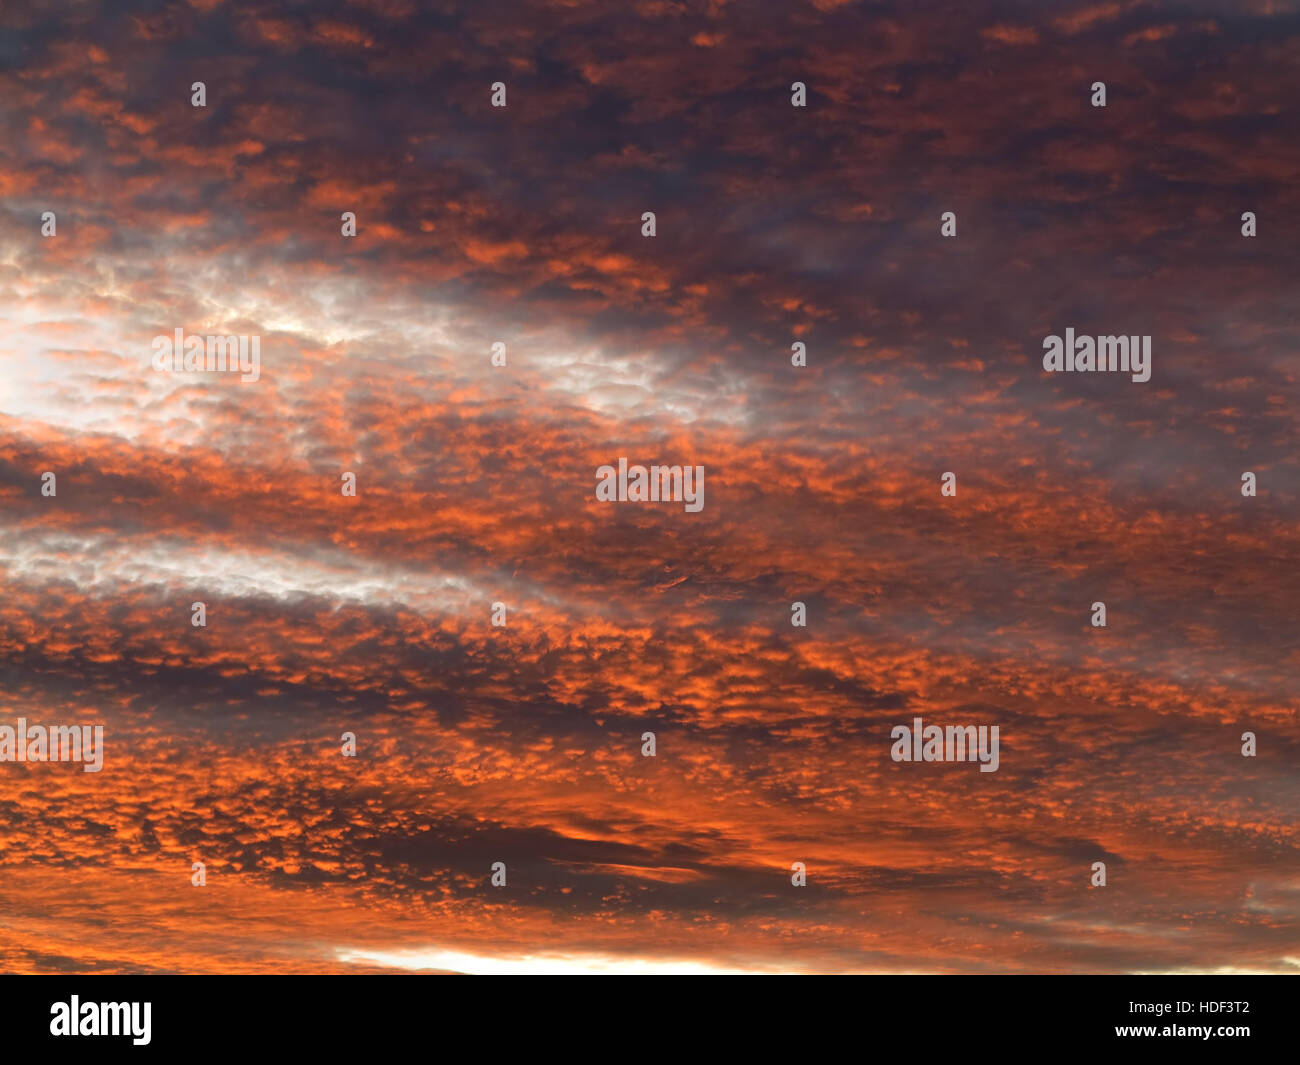 Cielo rosso al tramonto - immagine del cielo roseo - gloaming - colori del tramonto Foto Stock